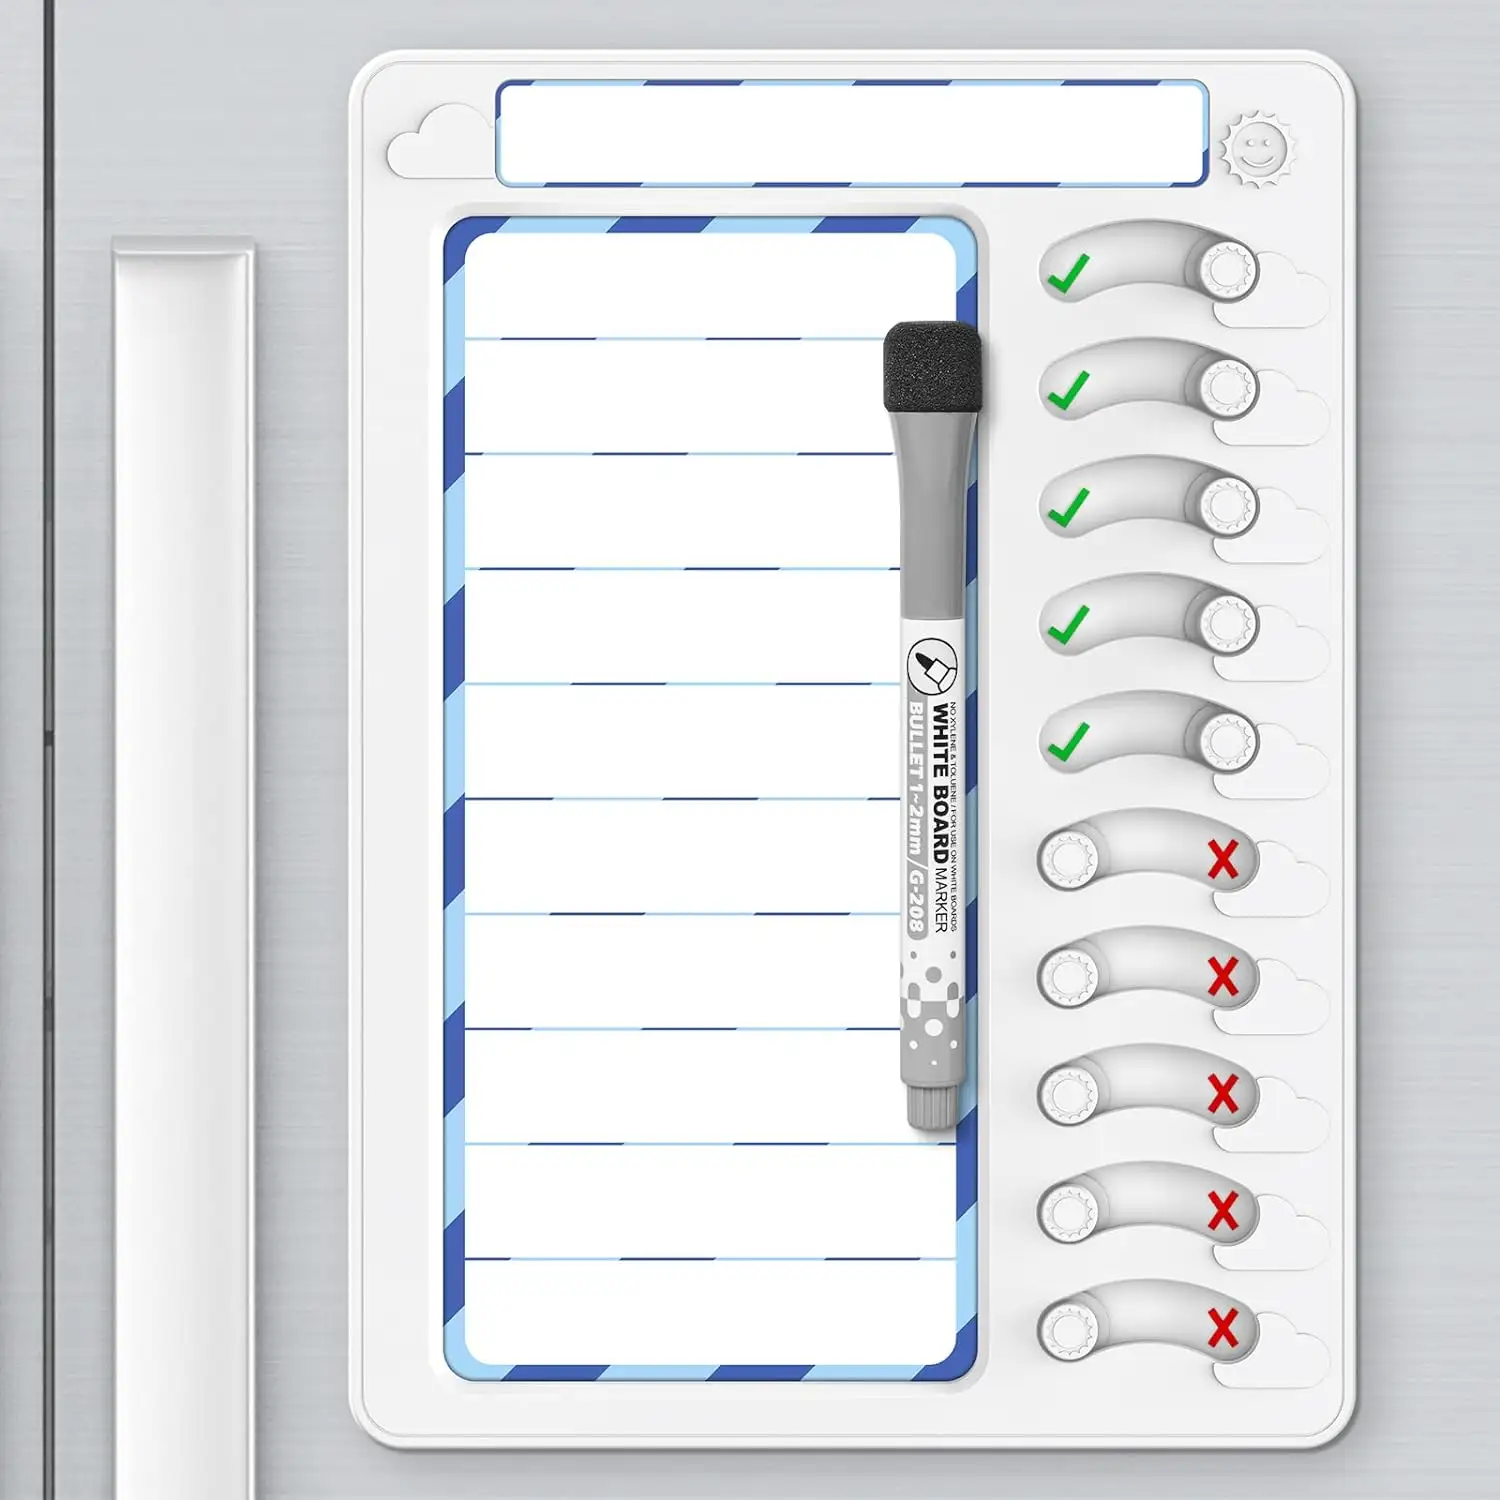 Personalizada Venta caliente magnética Memo Planer Board My Checklist tareas